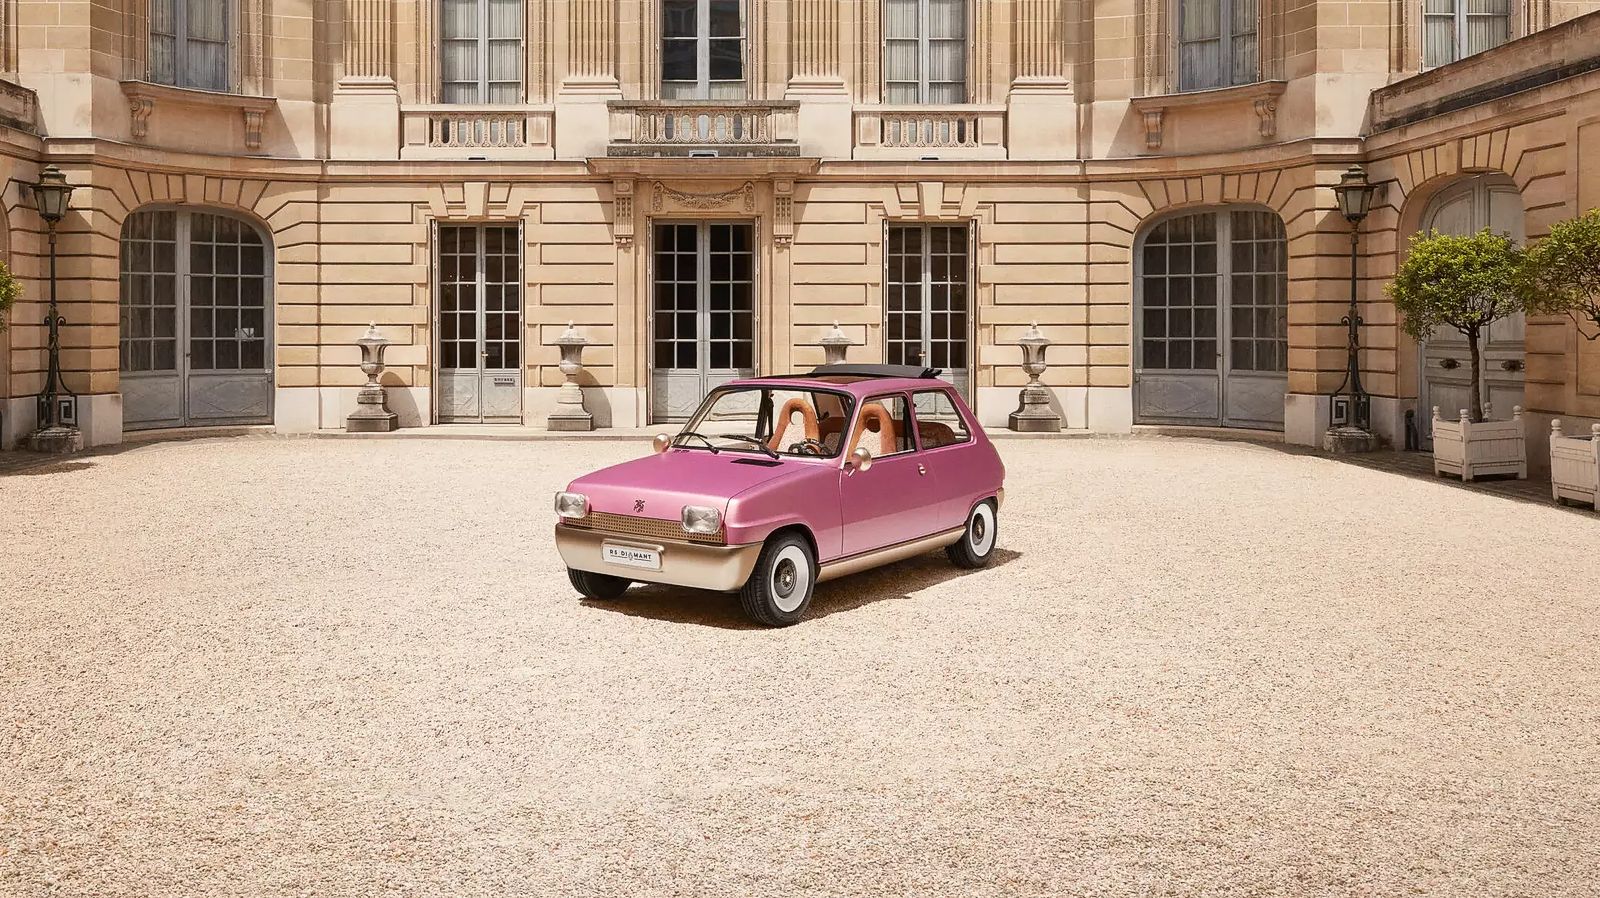 Электромобиль Renault 5 Diamant создан Пьером Гоналоном в честь 50-летия культового автомобиля